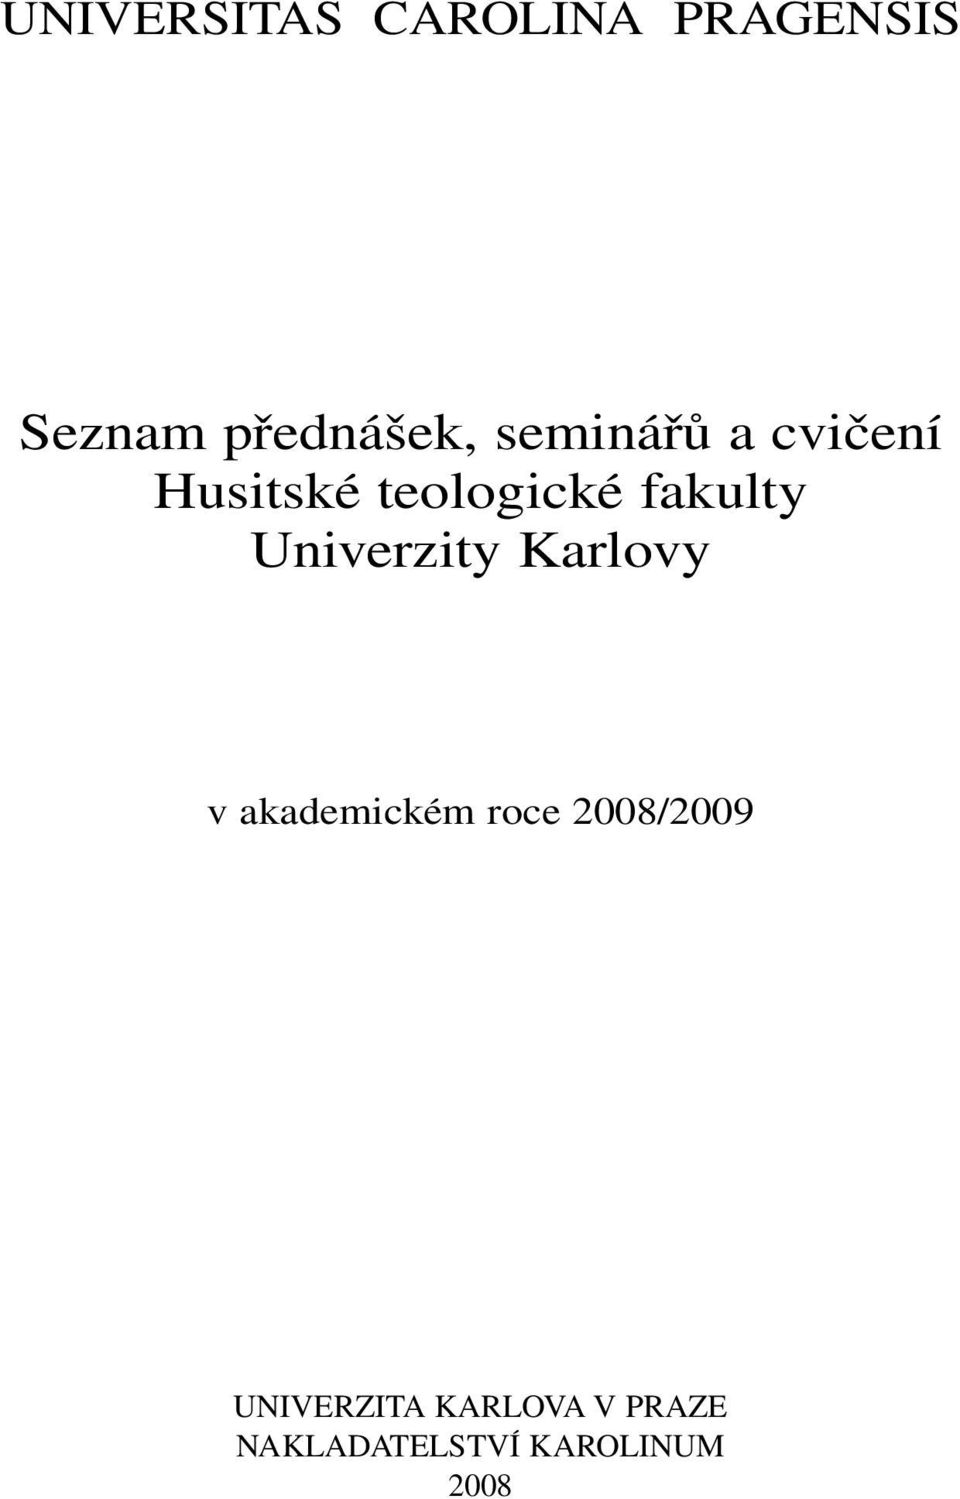 Univerzity Karlovy v akademickém roce 2008/2009